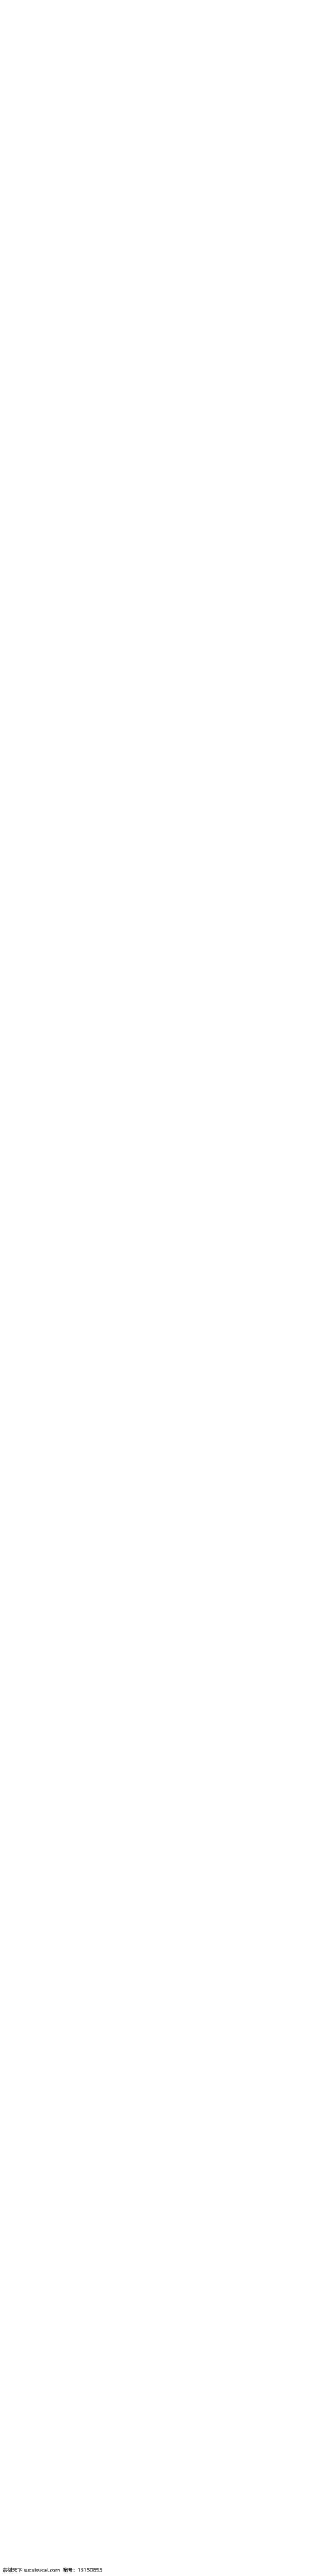 淘宝 天猫 粉色 38 女王 节 首页 活动海报 促销海报 优惠券 首页模板 爱心 38女王节 logo 大促海报 女王节海报 浪漫 海报